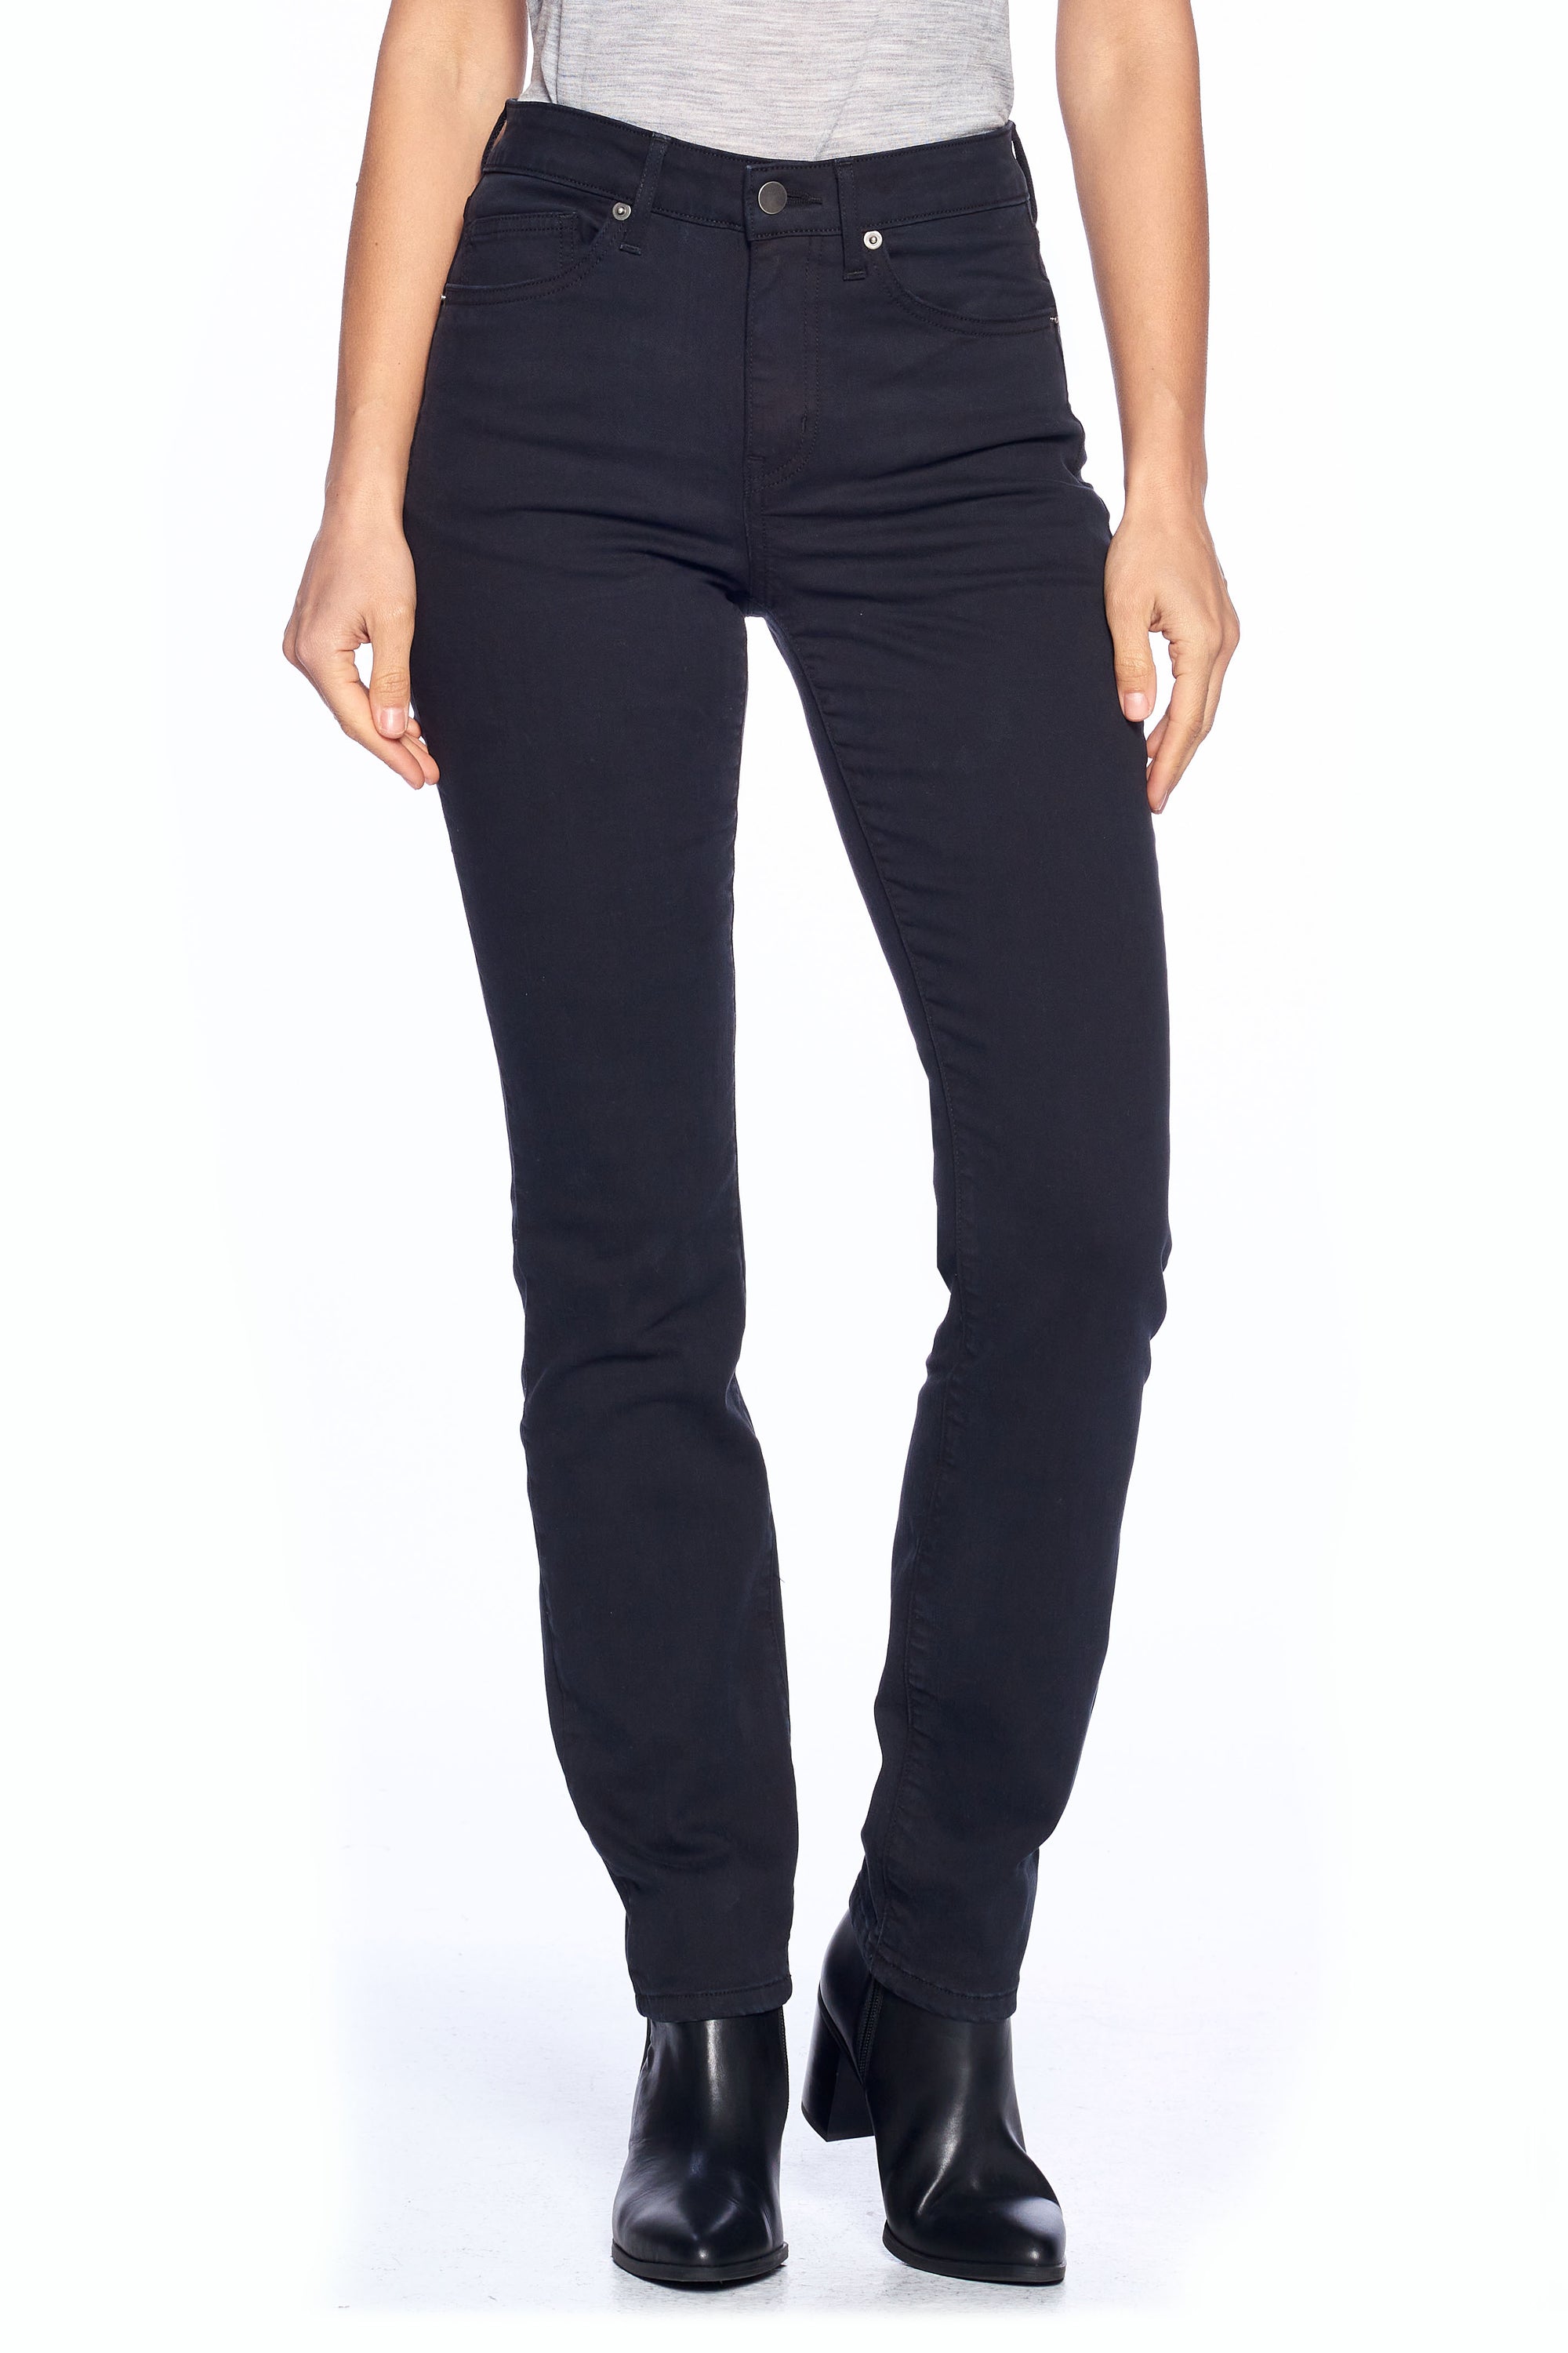 Main image of slim straight Aviator women's travel jeans